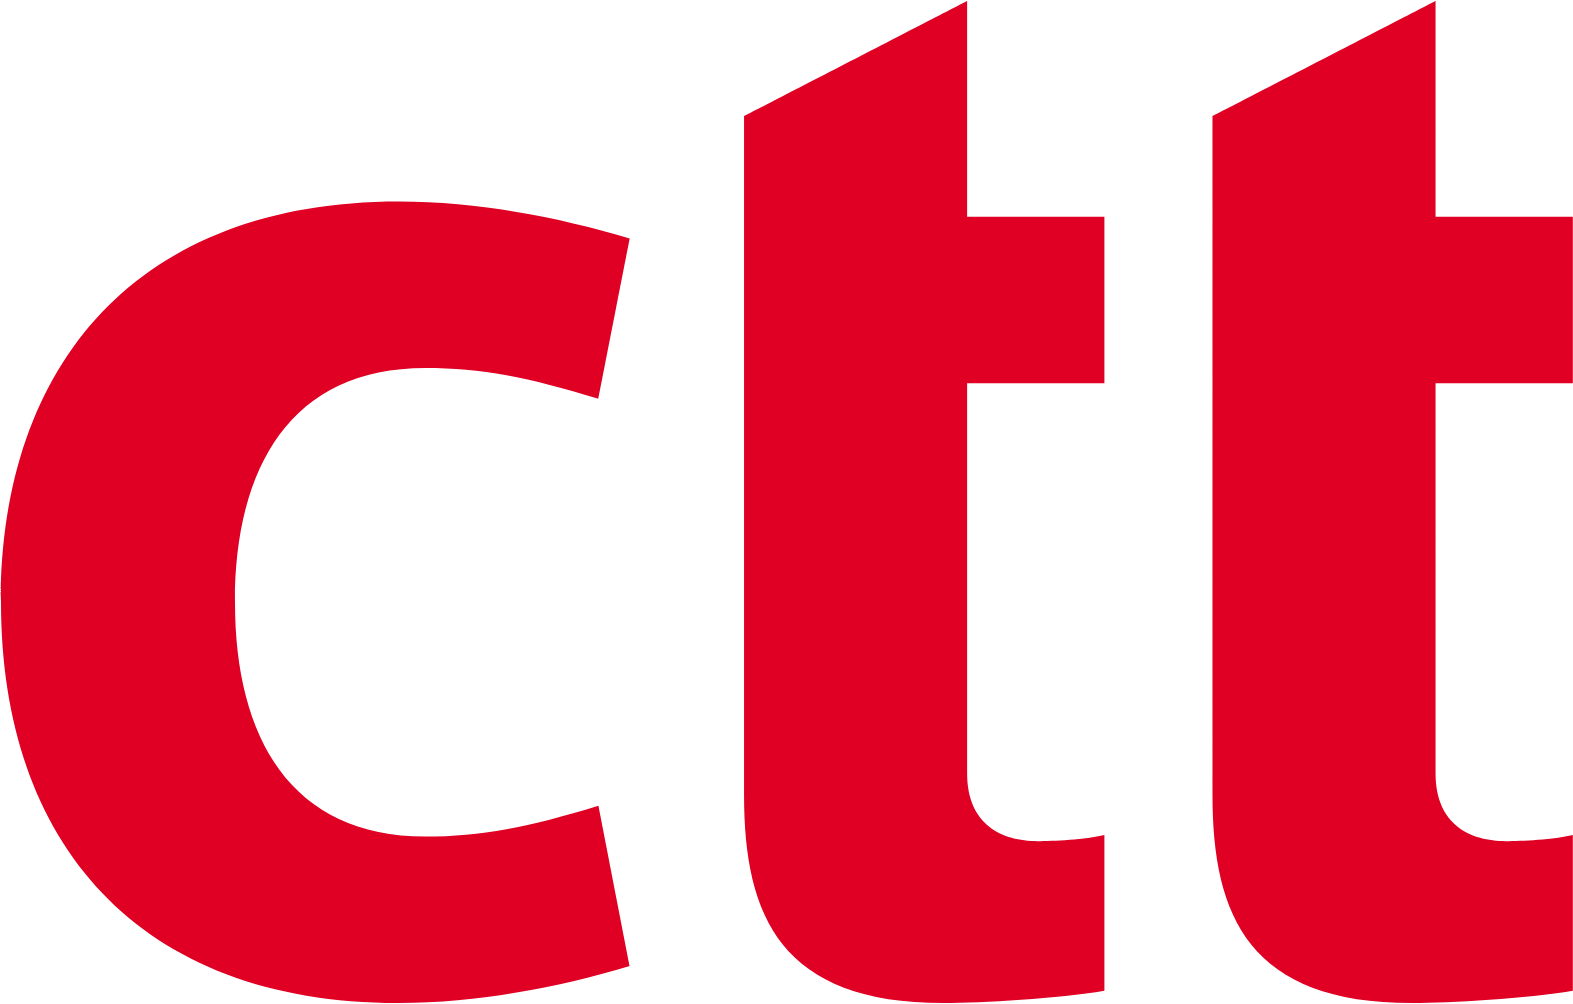 CTT - Correios De Portugal logo (transparent PNG)